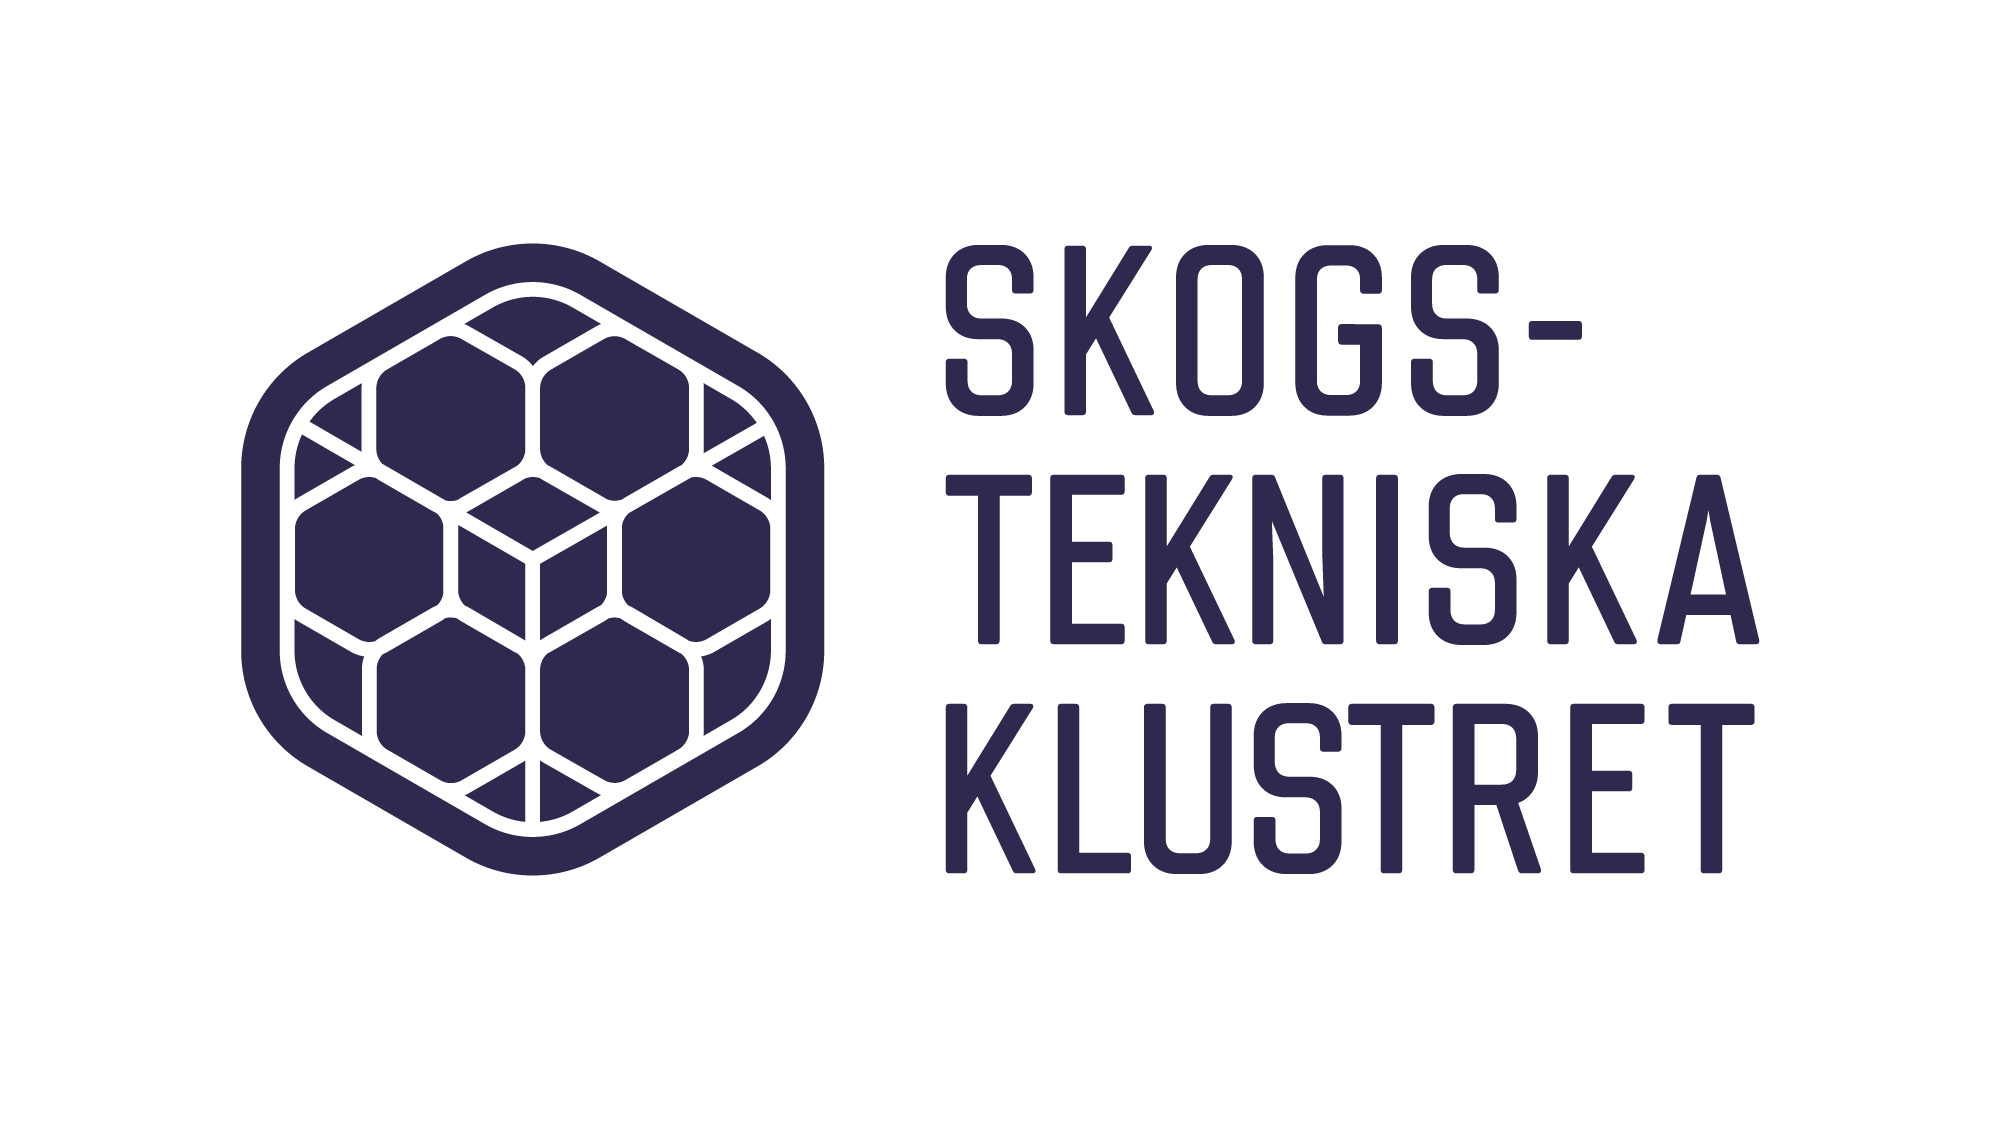 Skogstekniska klustret - The Cluster of Forest Technology